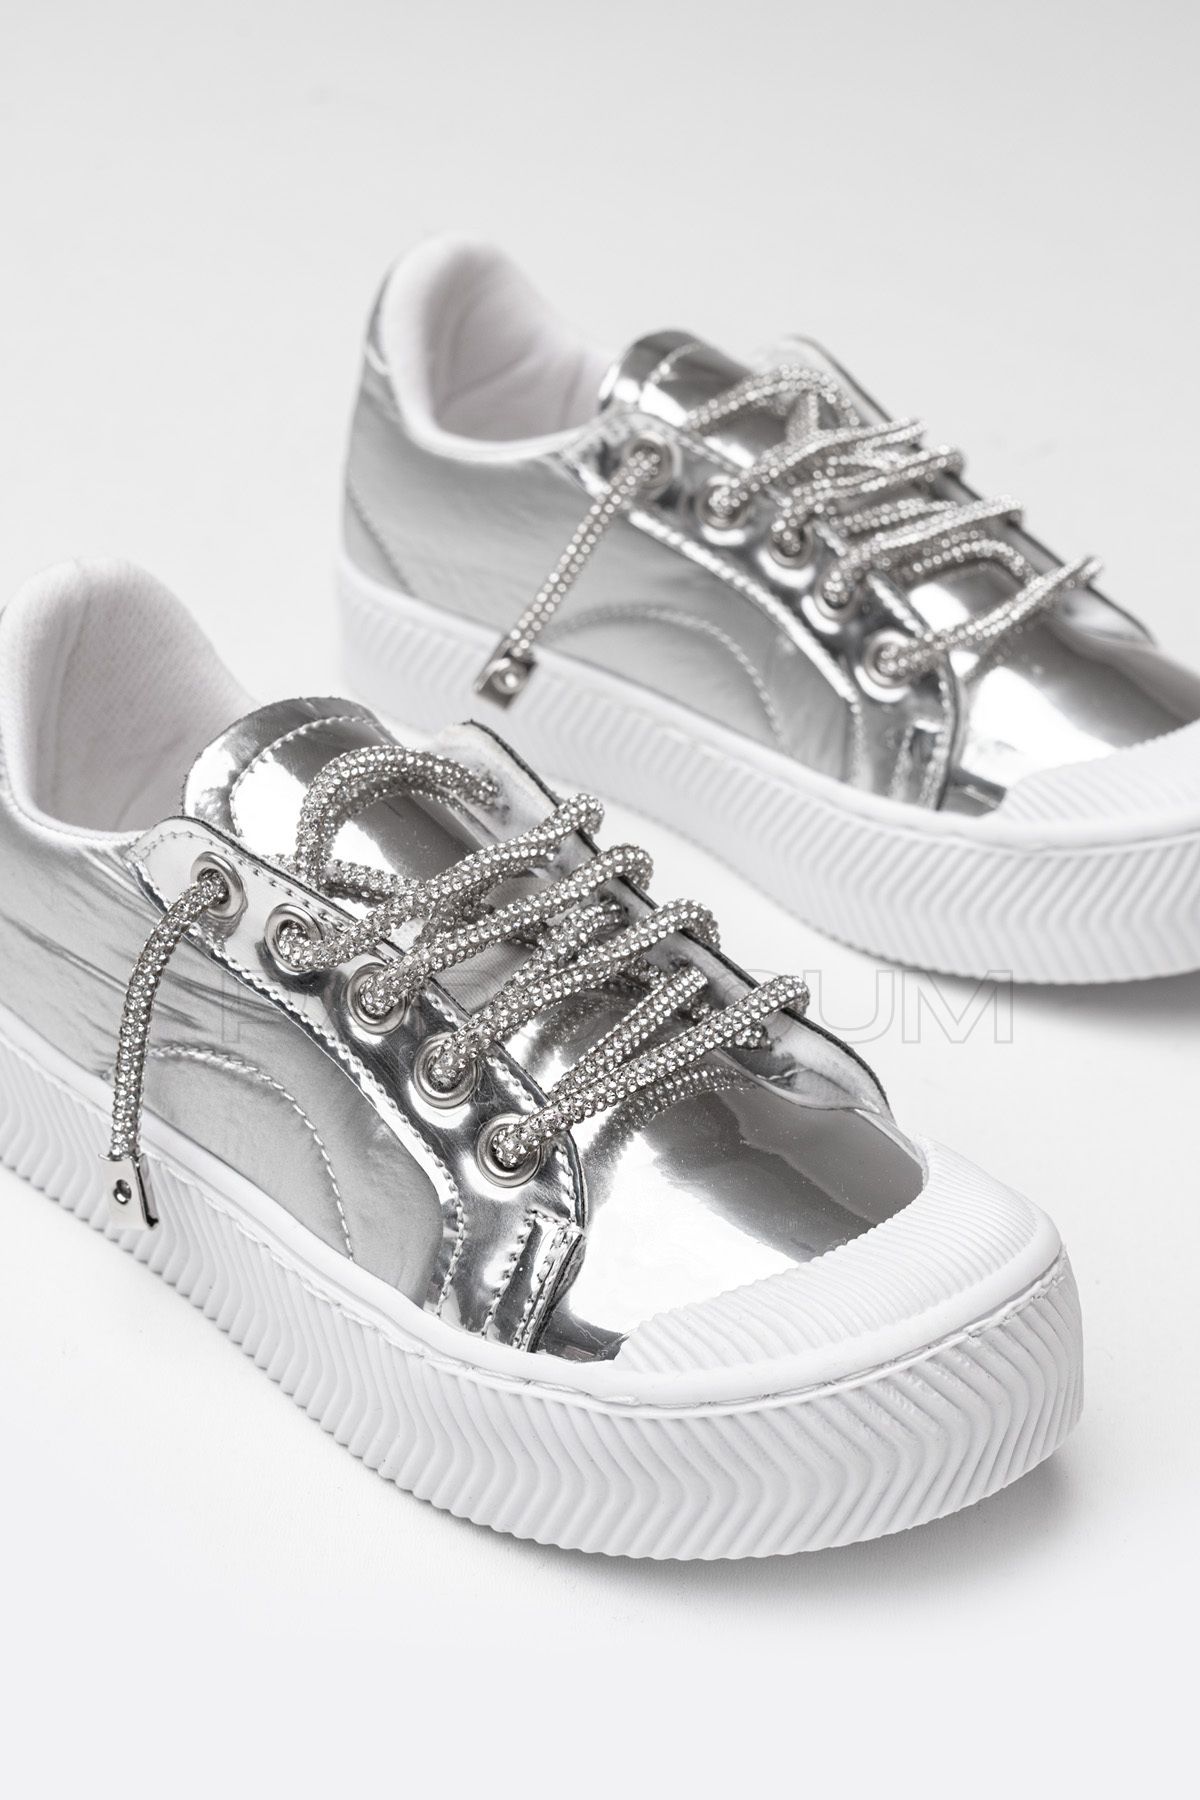 p papuccum ortopedi çocuk ayakkabıları Kız Çocuk Gümüş Bağcık Taşlı Spor Ayakkabı